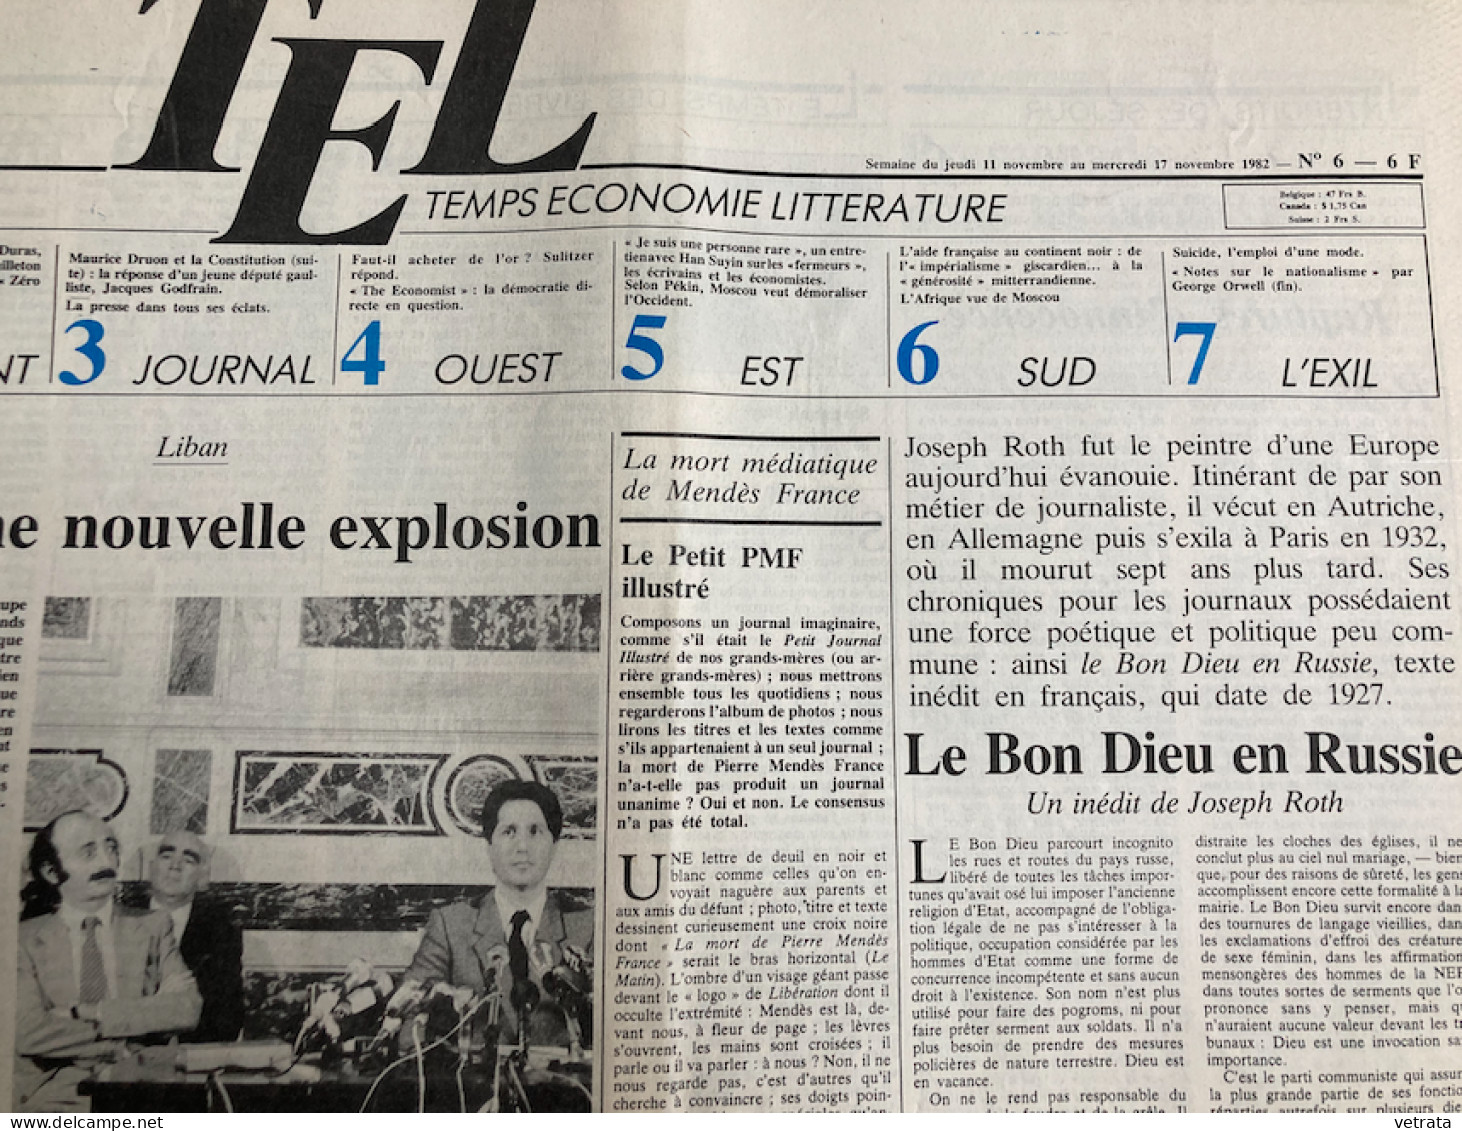 Joseph Roth : Tarabas (points Seuil-1990 - Bon état) + TEL N°6-1982 (Le Bon Dieu En Russie, Inédit De J.R.) & Libération - Periódicos - Antes 1800